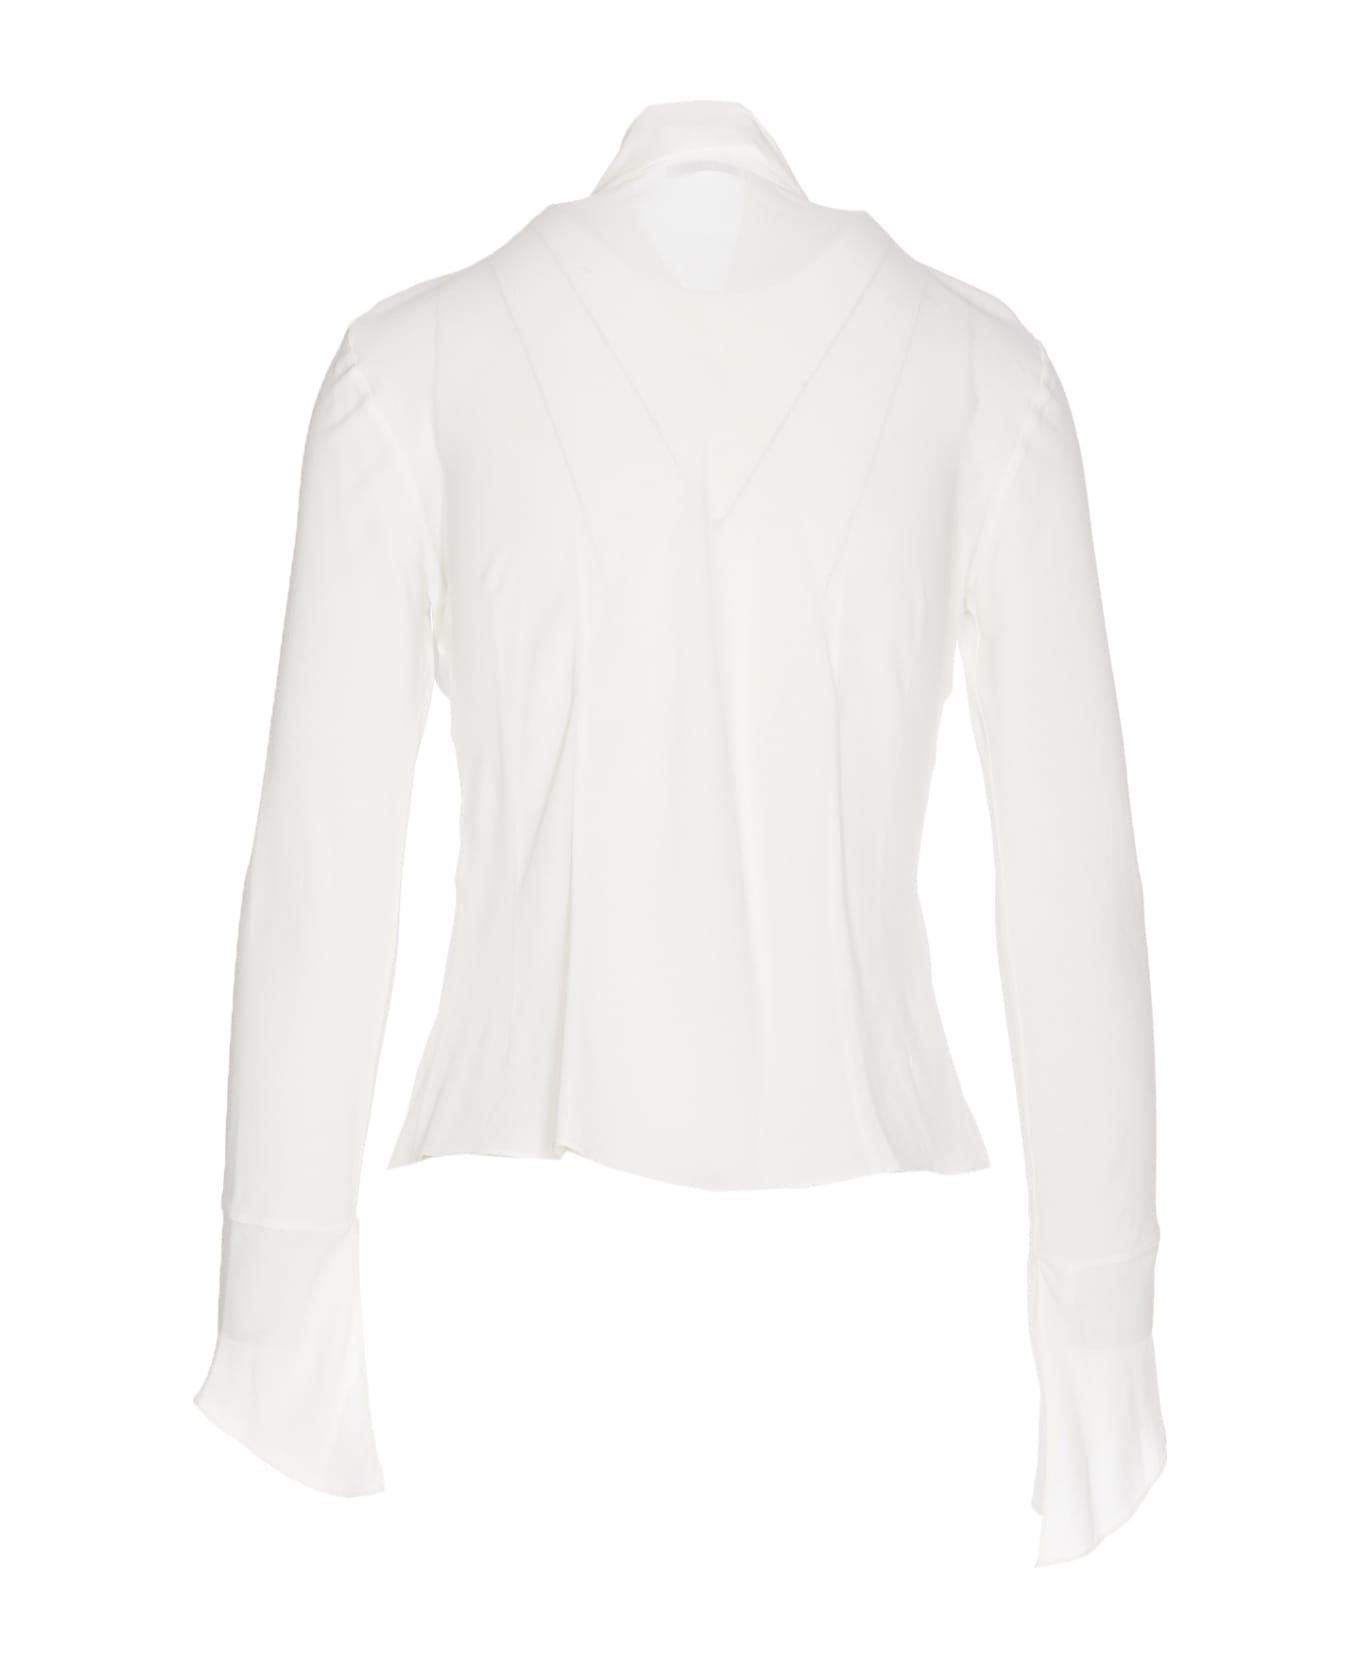 Patrizia Pepe Essential Soft Shirt - White シャツ